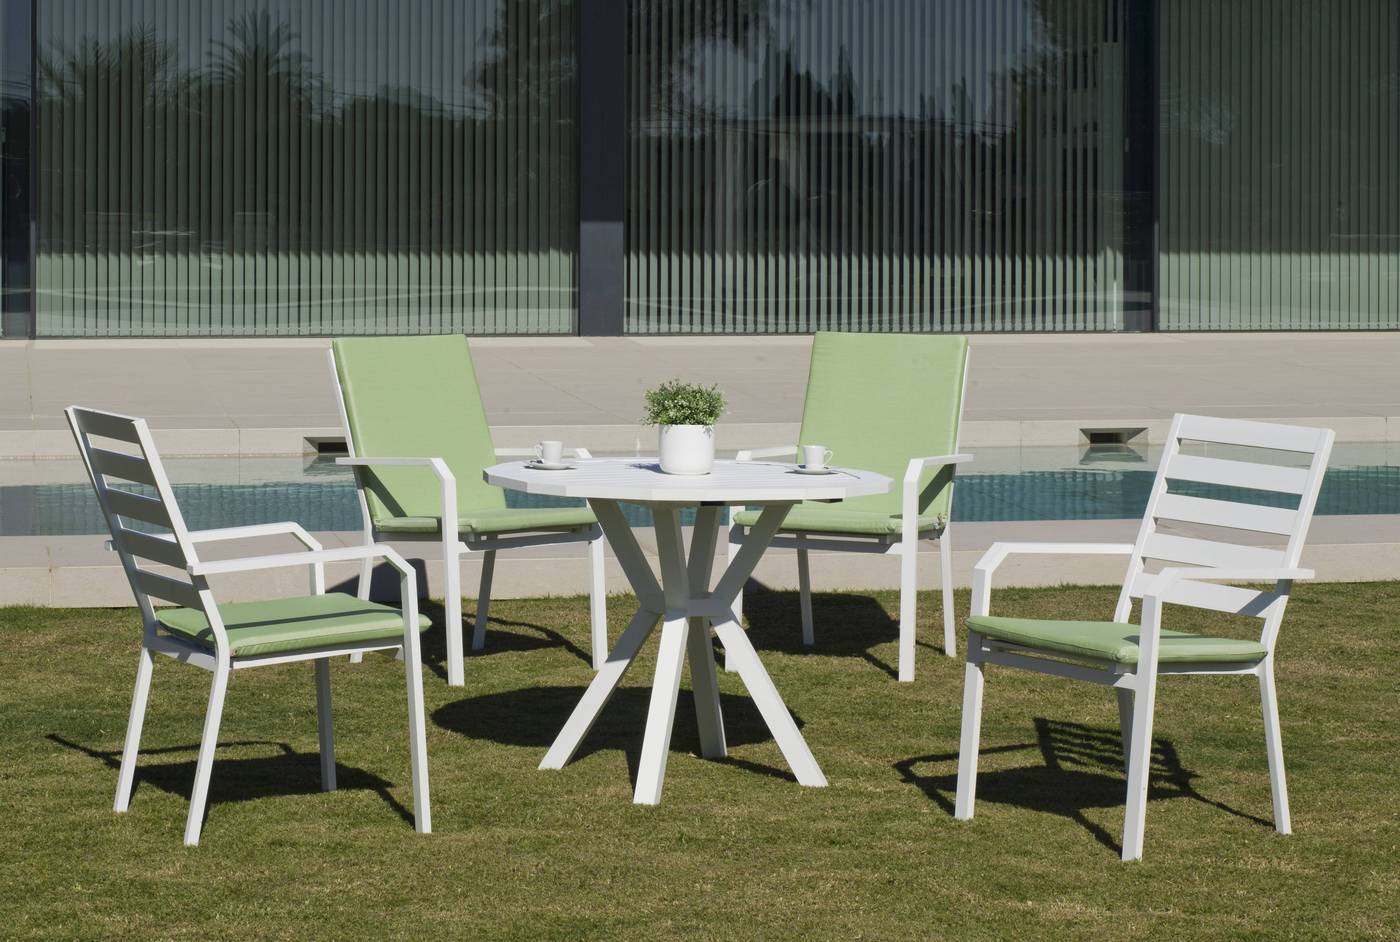 Set Aluminio Baracoa-Palma 110-4 - Moderno conjunto de aluminio luxe: Mesa de comedor poligonal de 110 cm. + 4 sillones de aluminio. Disponible en color blanco, antracita, champagne, plata o marrón.